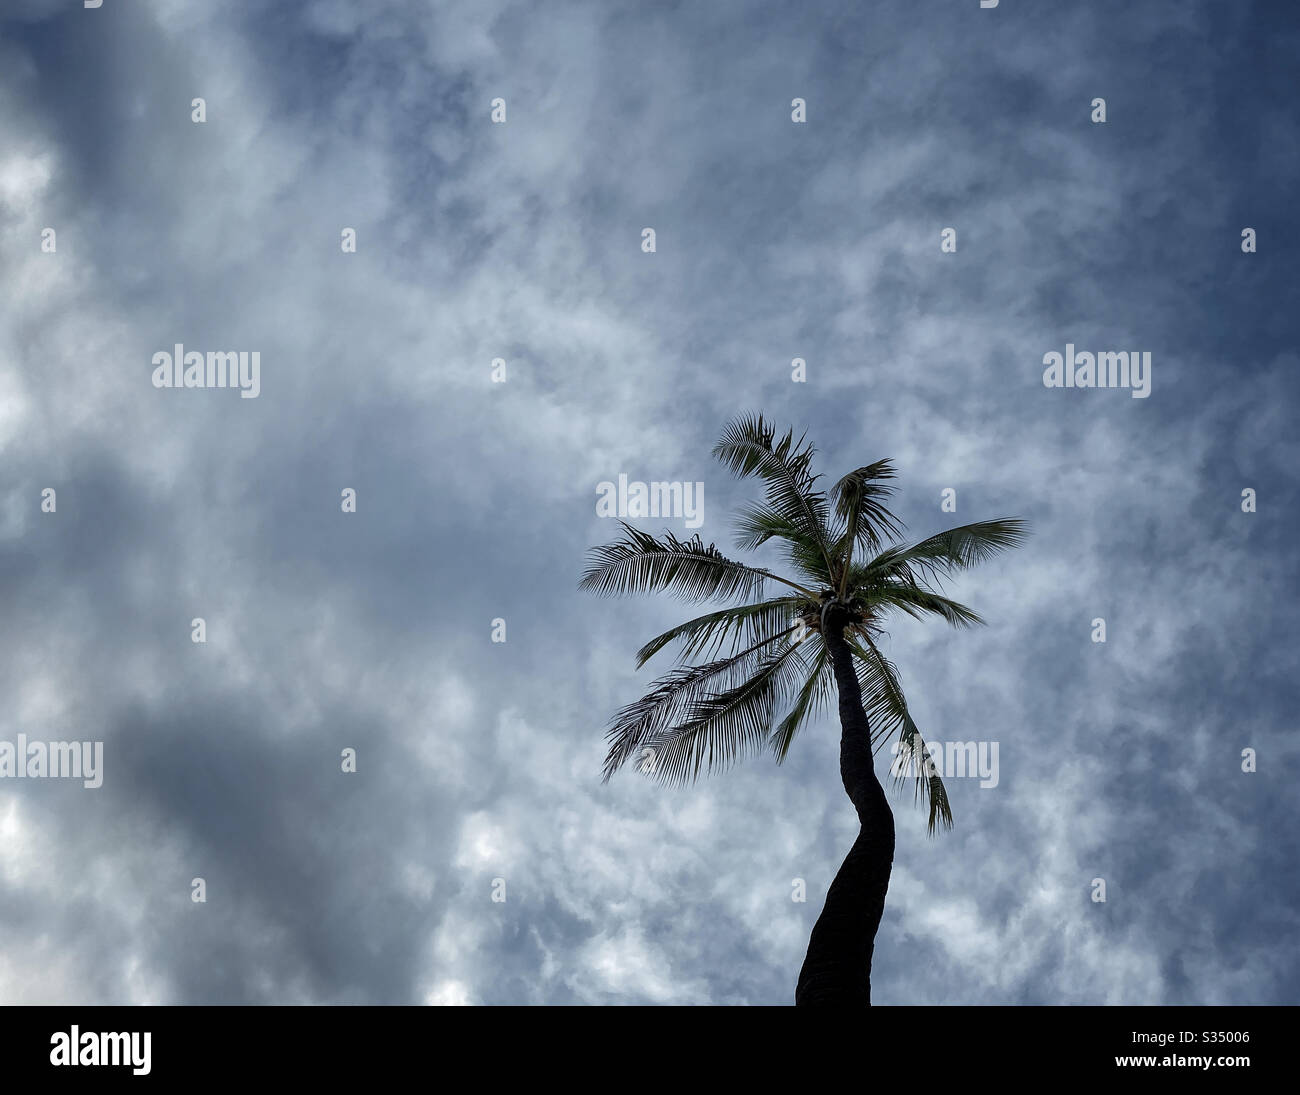 Palmier à noix de coco silhouetté contre un ciel nuageux Banque D'Images